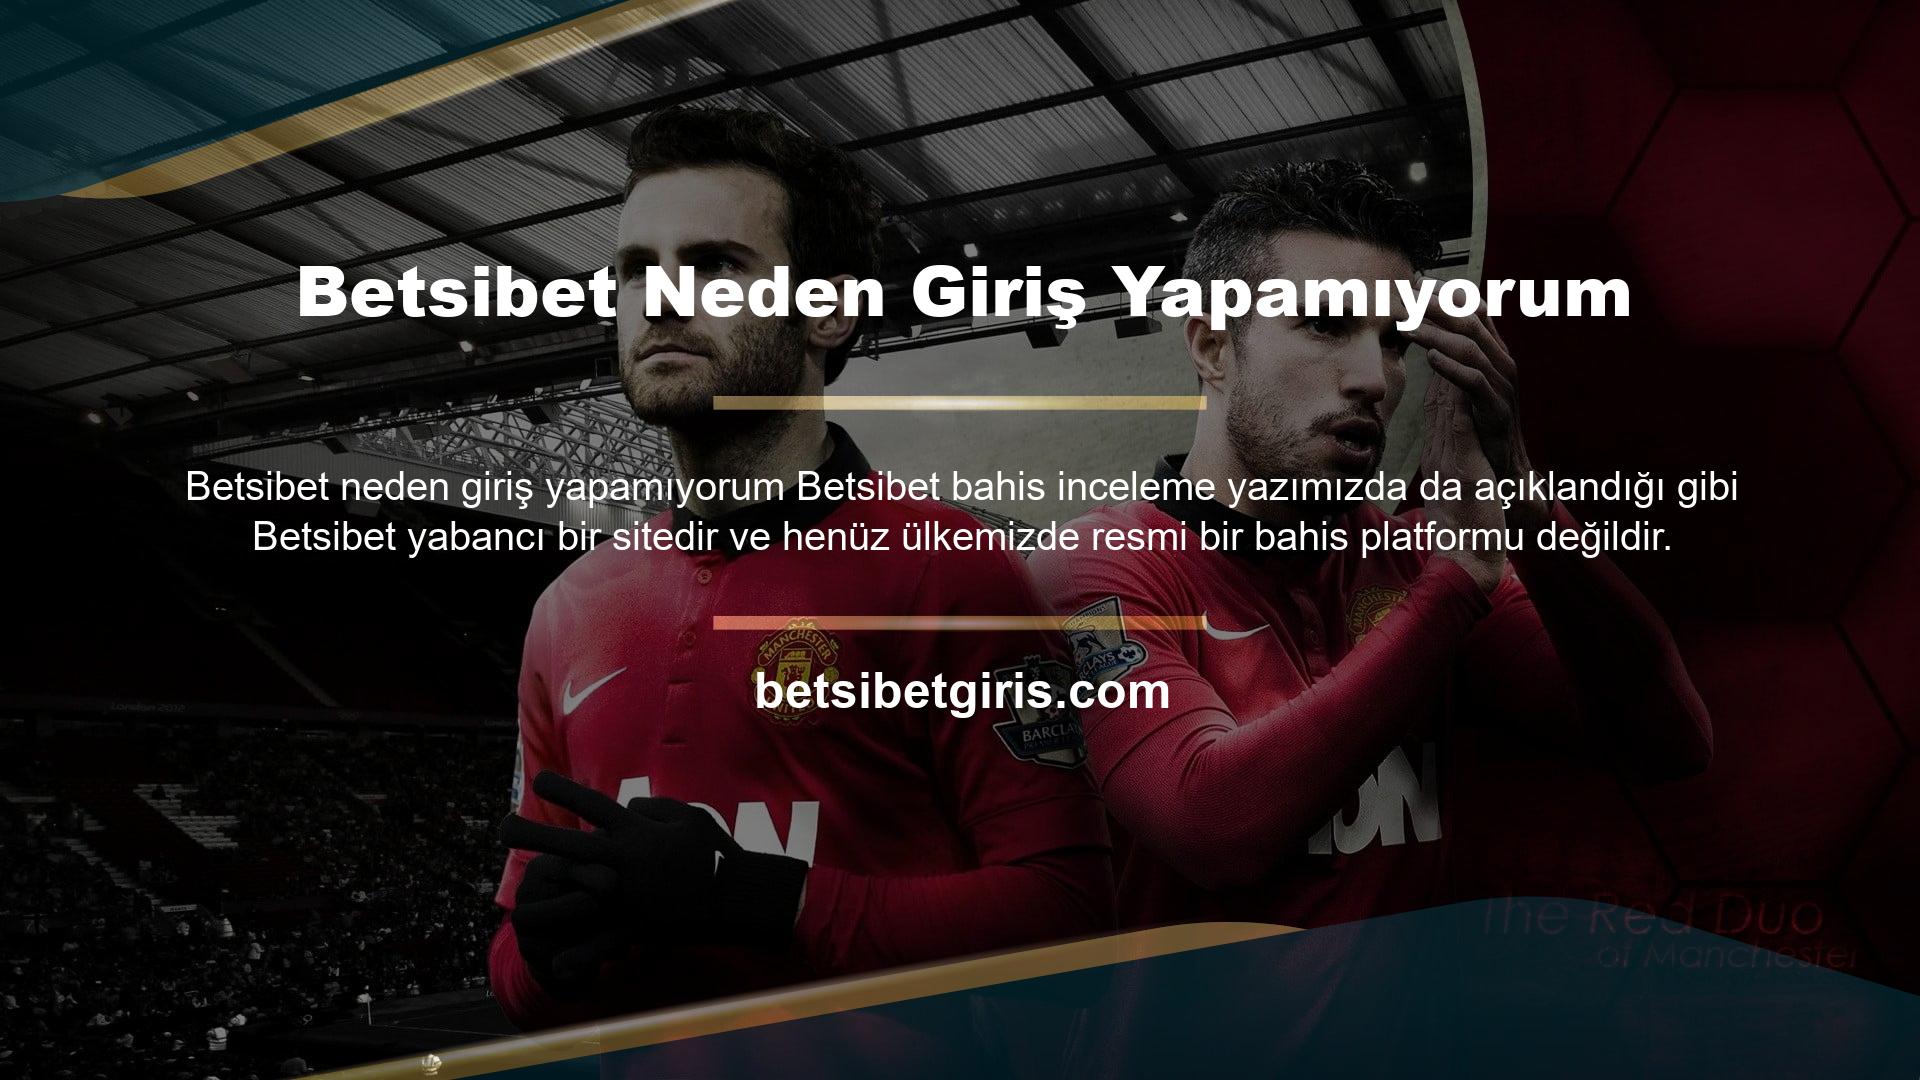 Sonuç olarak, Betsibet Türkiye kullanıcıları bağlantı sorunları yaşayabilir